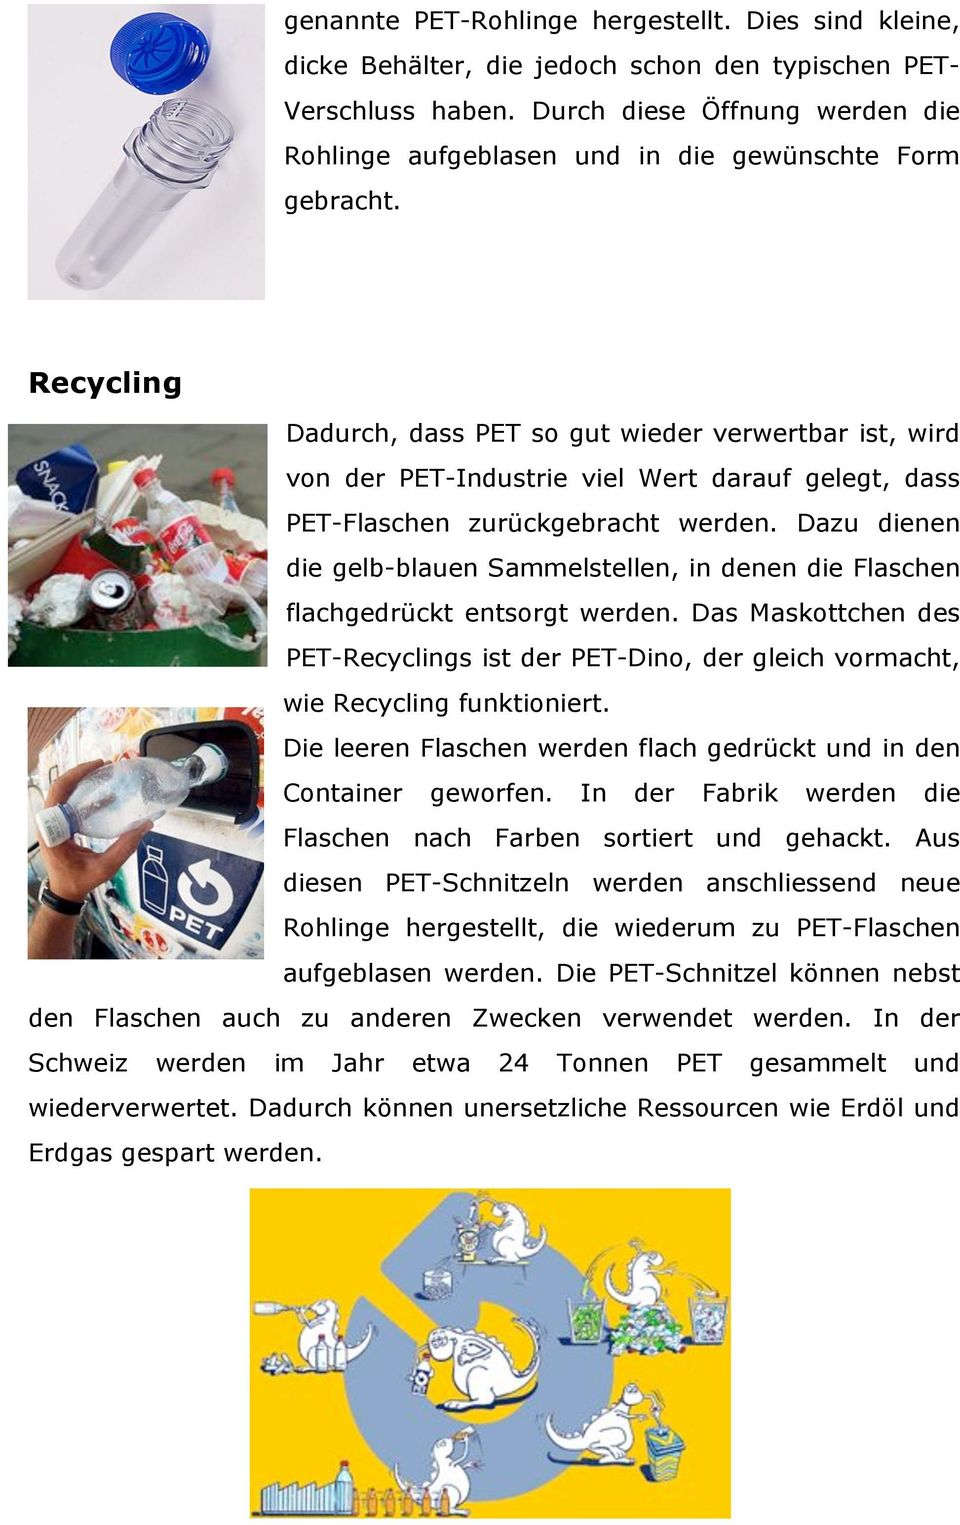 Recycling Dadurch, dass PET so gut wieder verwertbar ist, wird von der PET-Industrie viel Wert darauf gelegt, dass PET-Flaschen zurückgebracht werden.